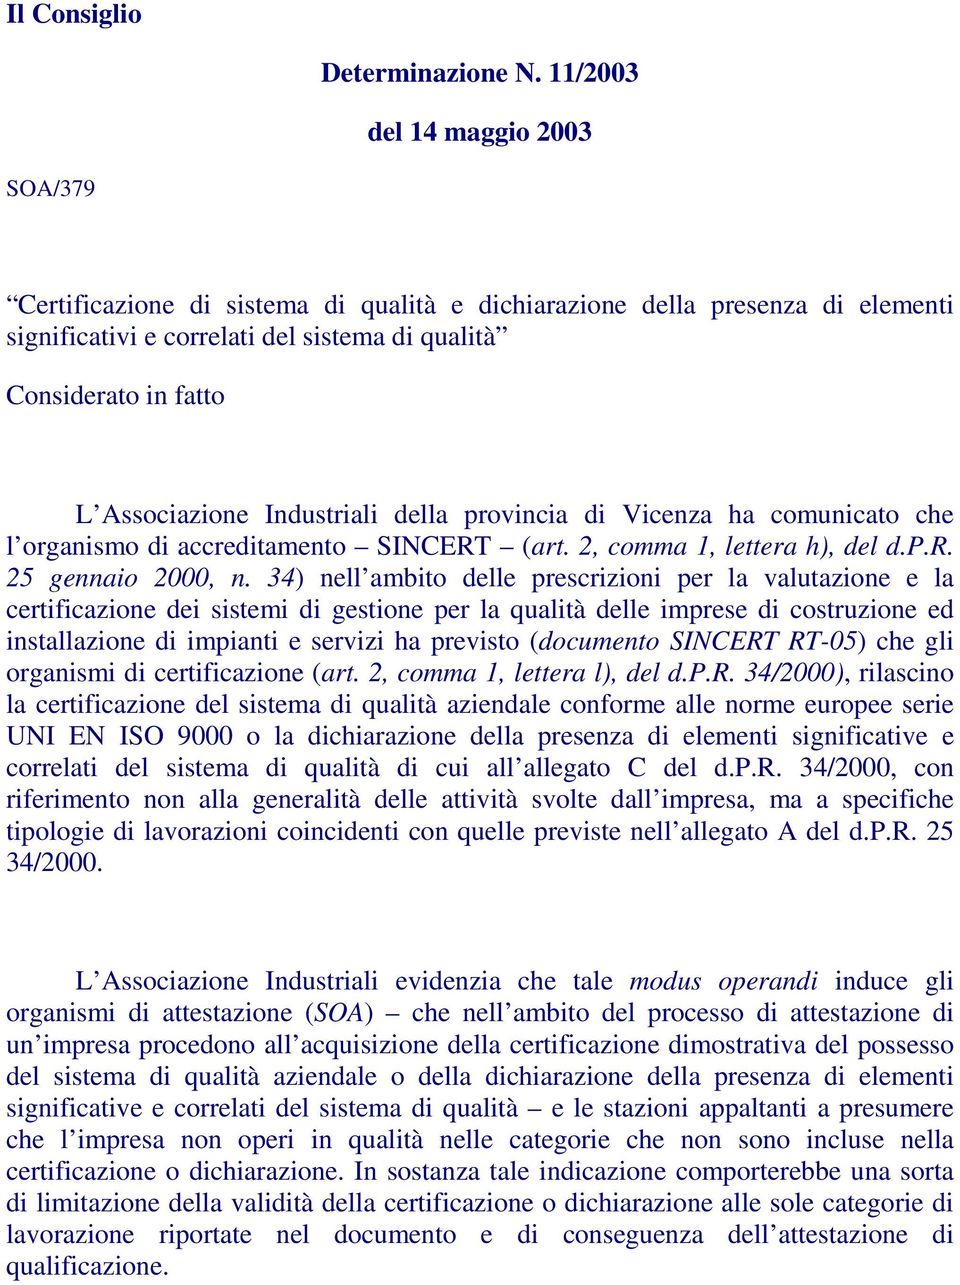 Industriali della provincia di Vicenza ha comunicato che l organismo di accreditamento SINCERT (art. 2, comma 1, lettera h), del d.p.r. 25 gennaio 2000, n.